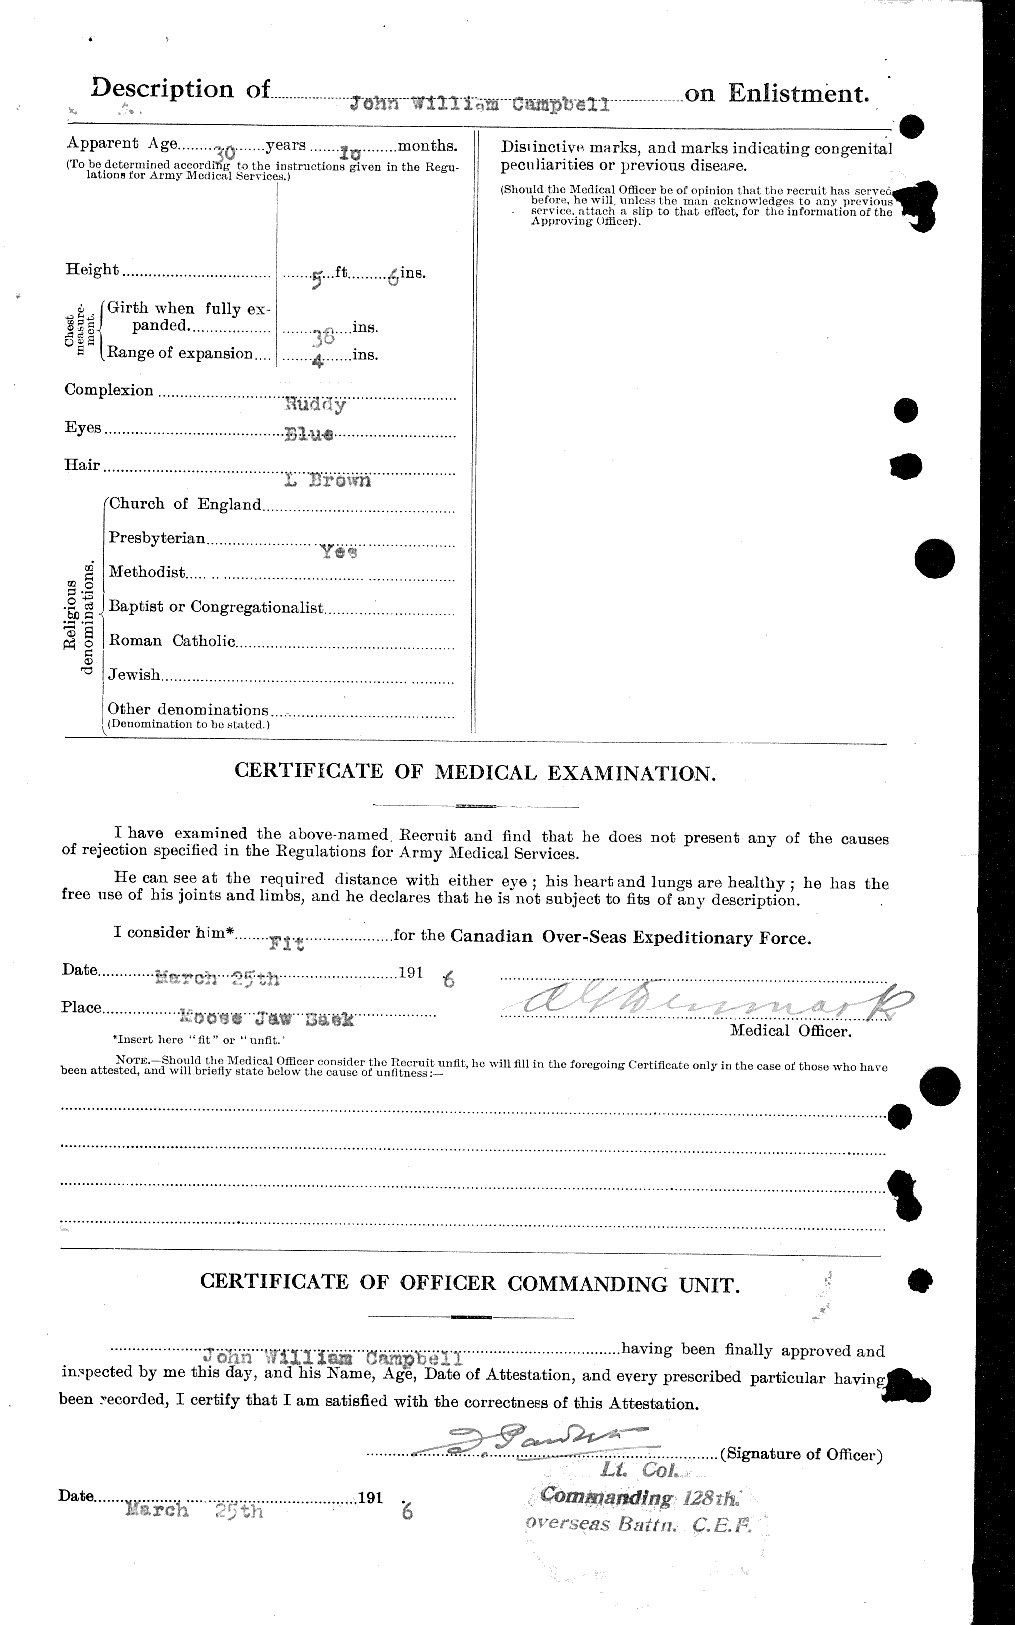 Dossiers du Personnel de la Première Guerre mondiale - CEC 003806b